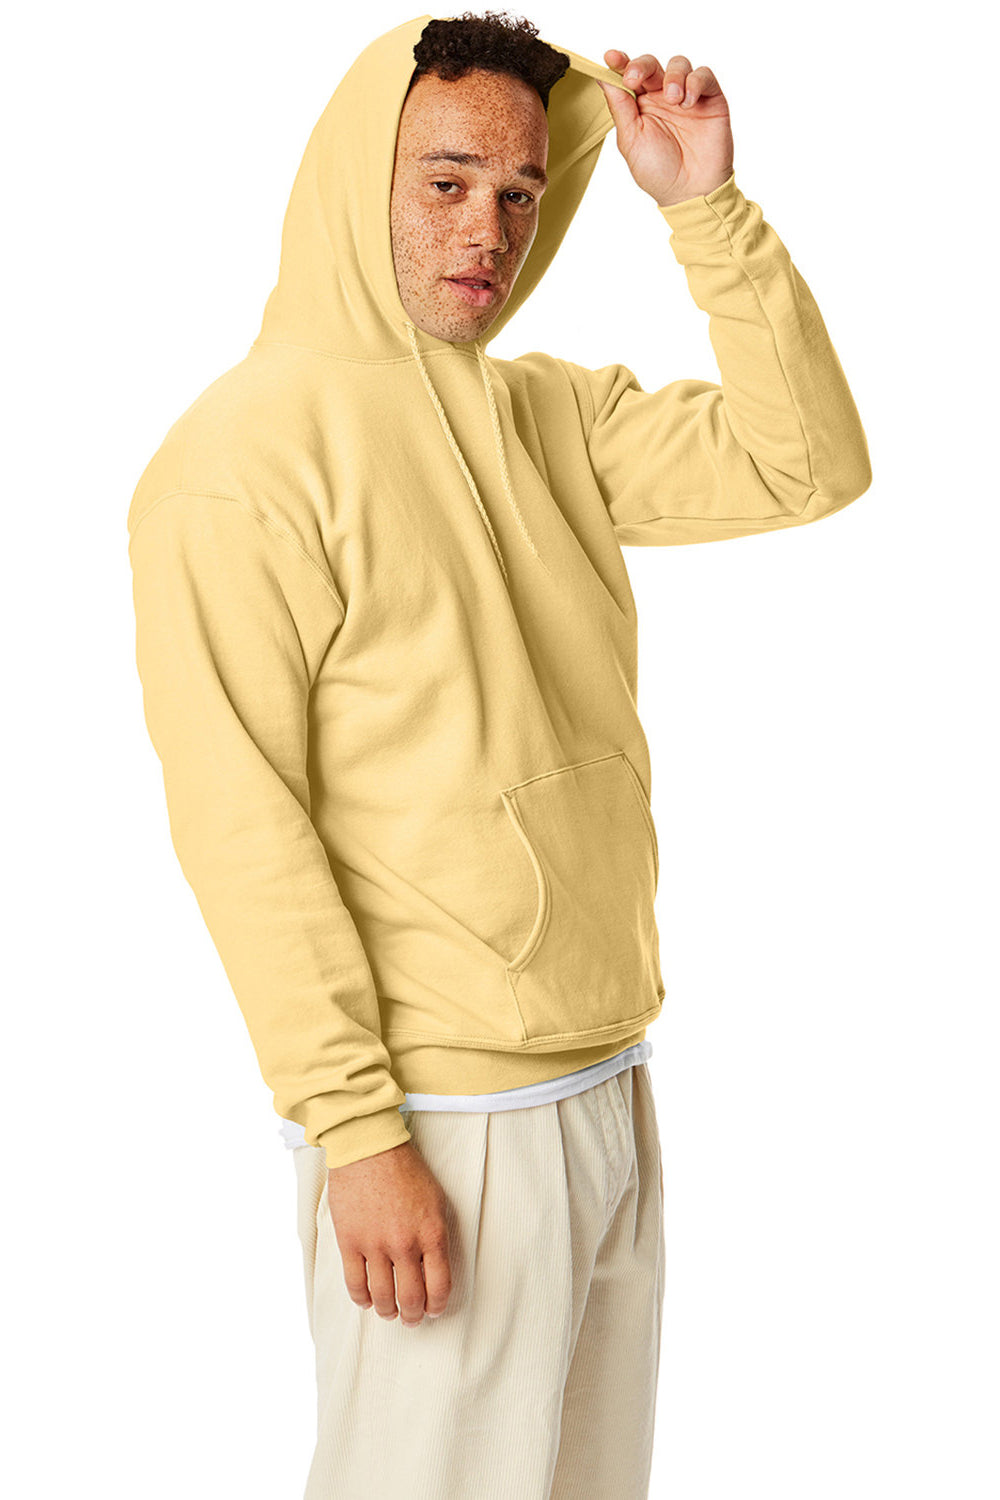 Hanes P170 Mens EcoSmart Print Pro XP Hooded Sweatshirt Hoodie Athletic Gold SIde